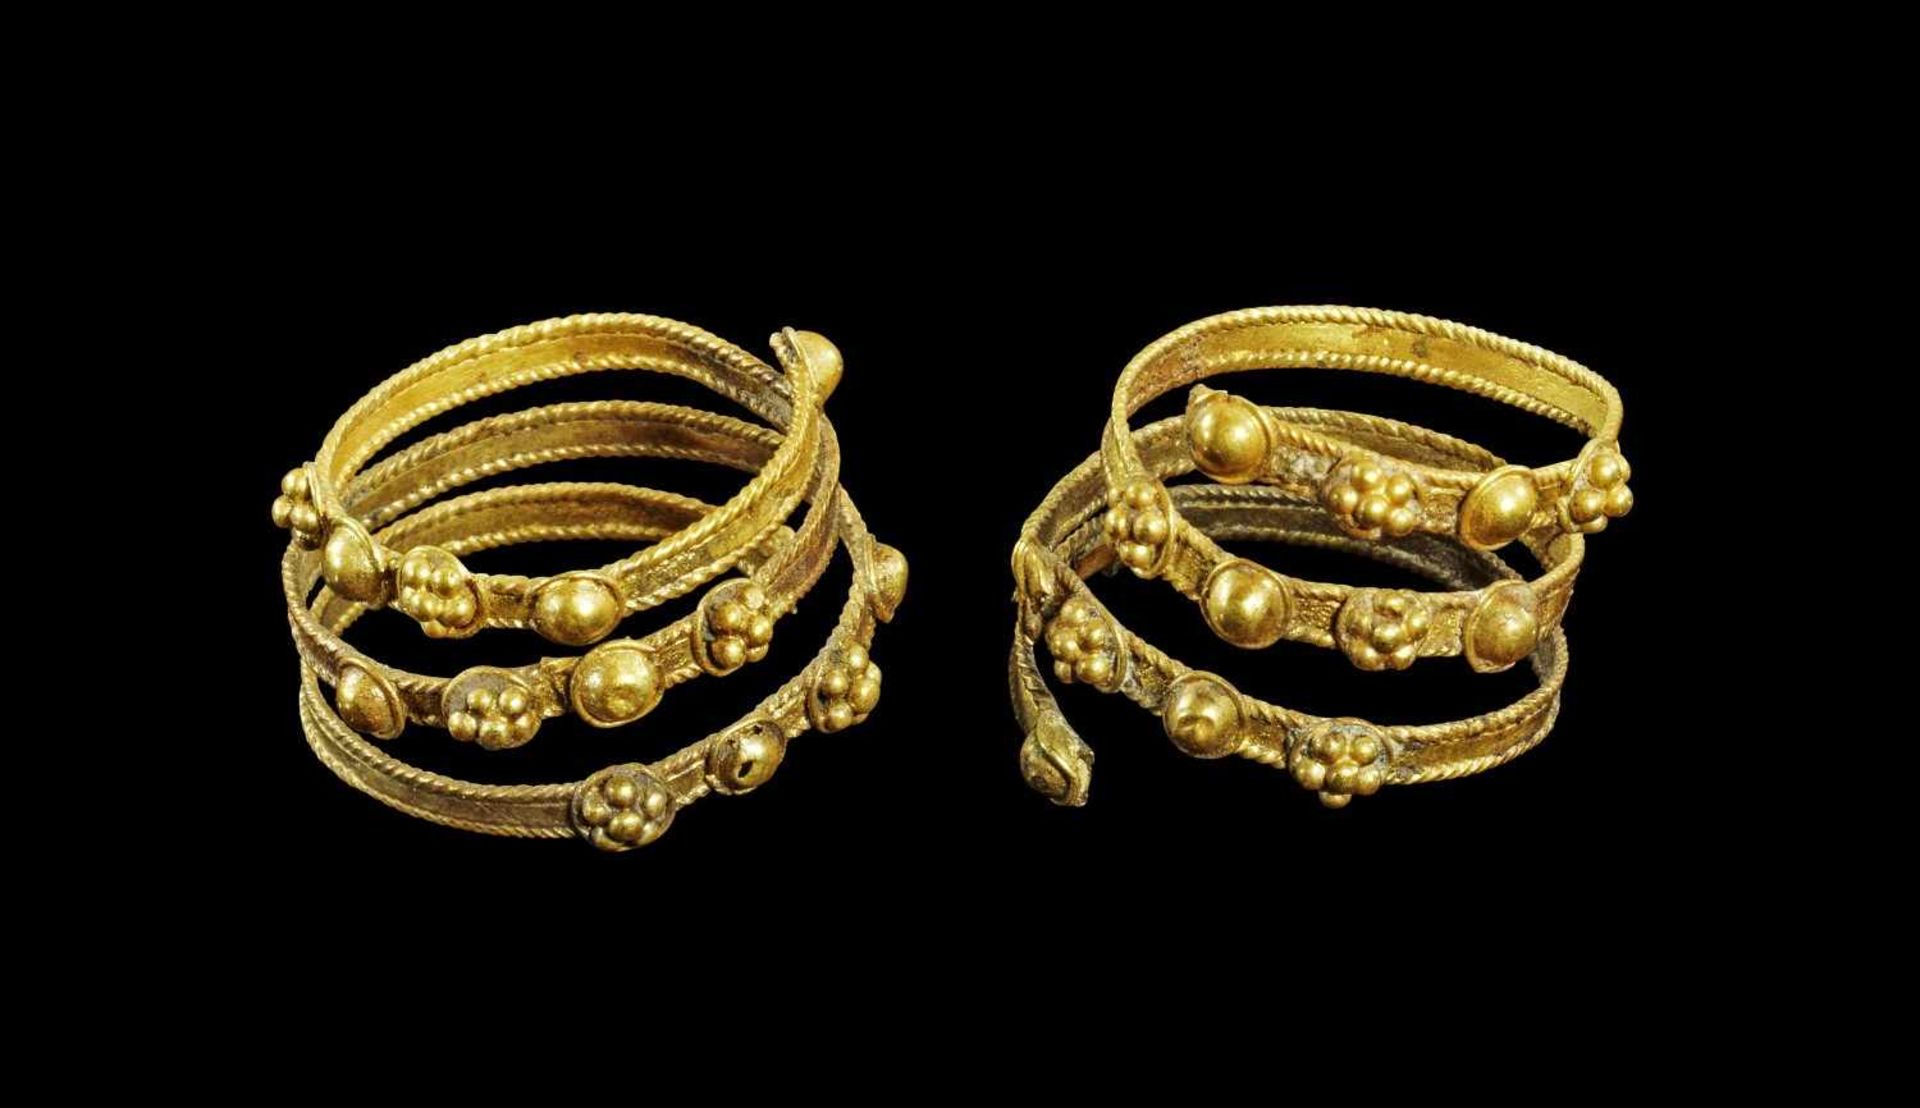 Paar goldene Spiralhaarringe. Etruskisch, 7. Jh. v. Chr. 2,88g, ø 1,7cm. Filigrane Spiralen aus